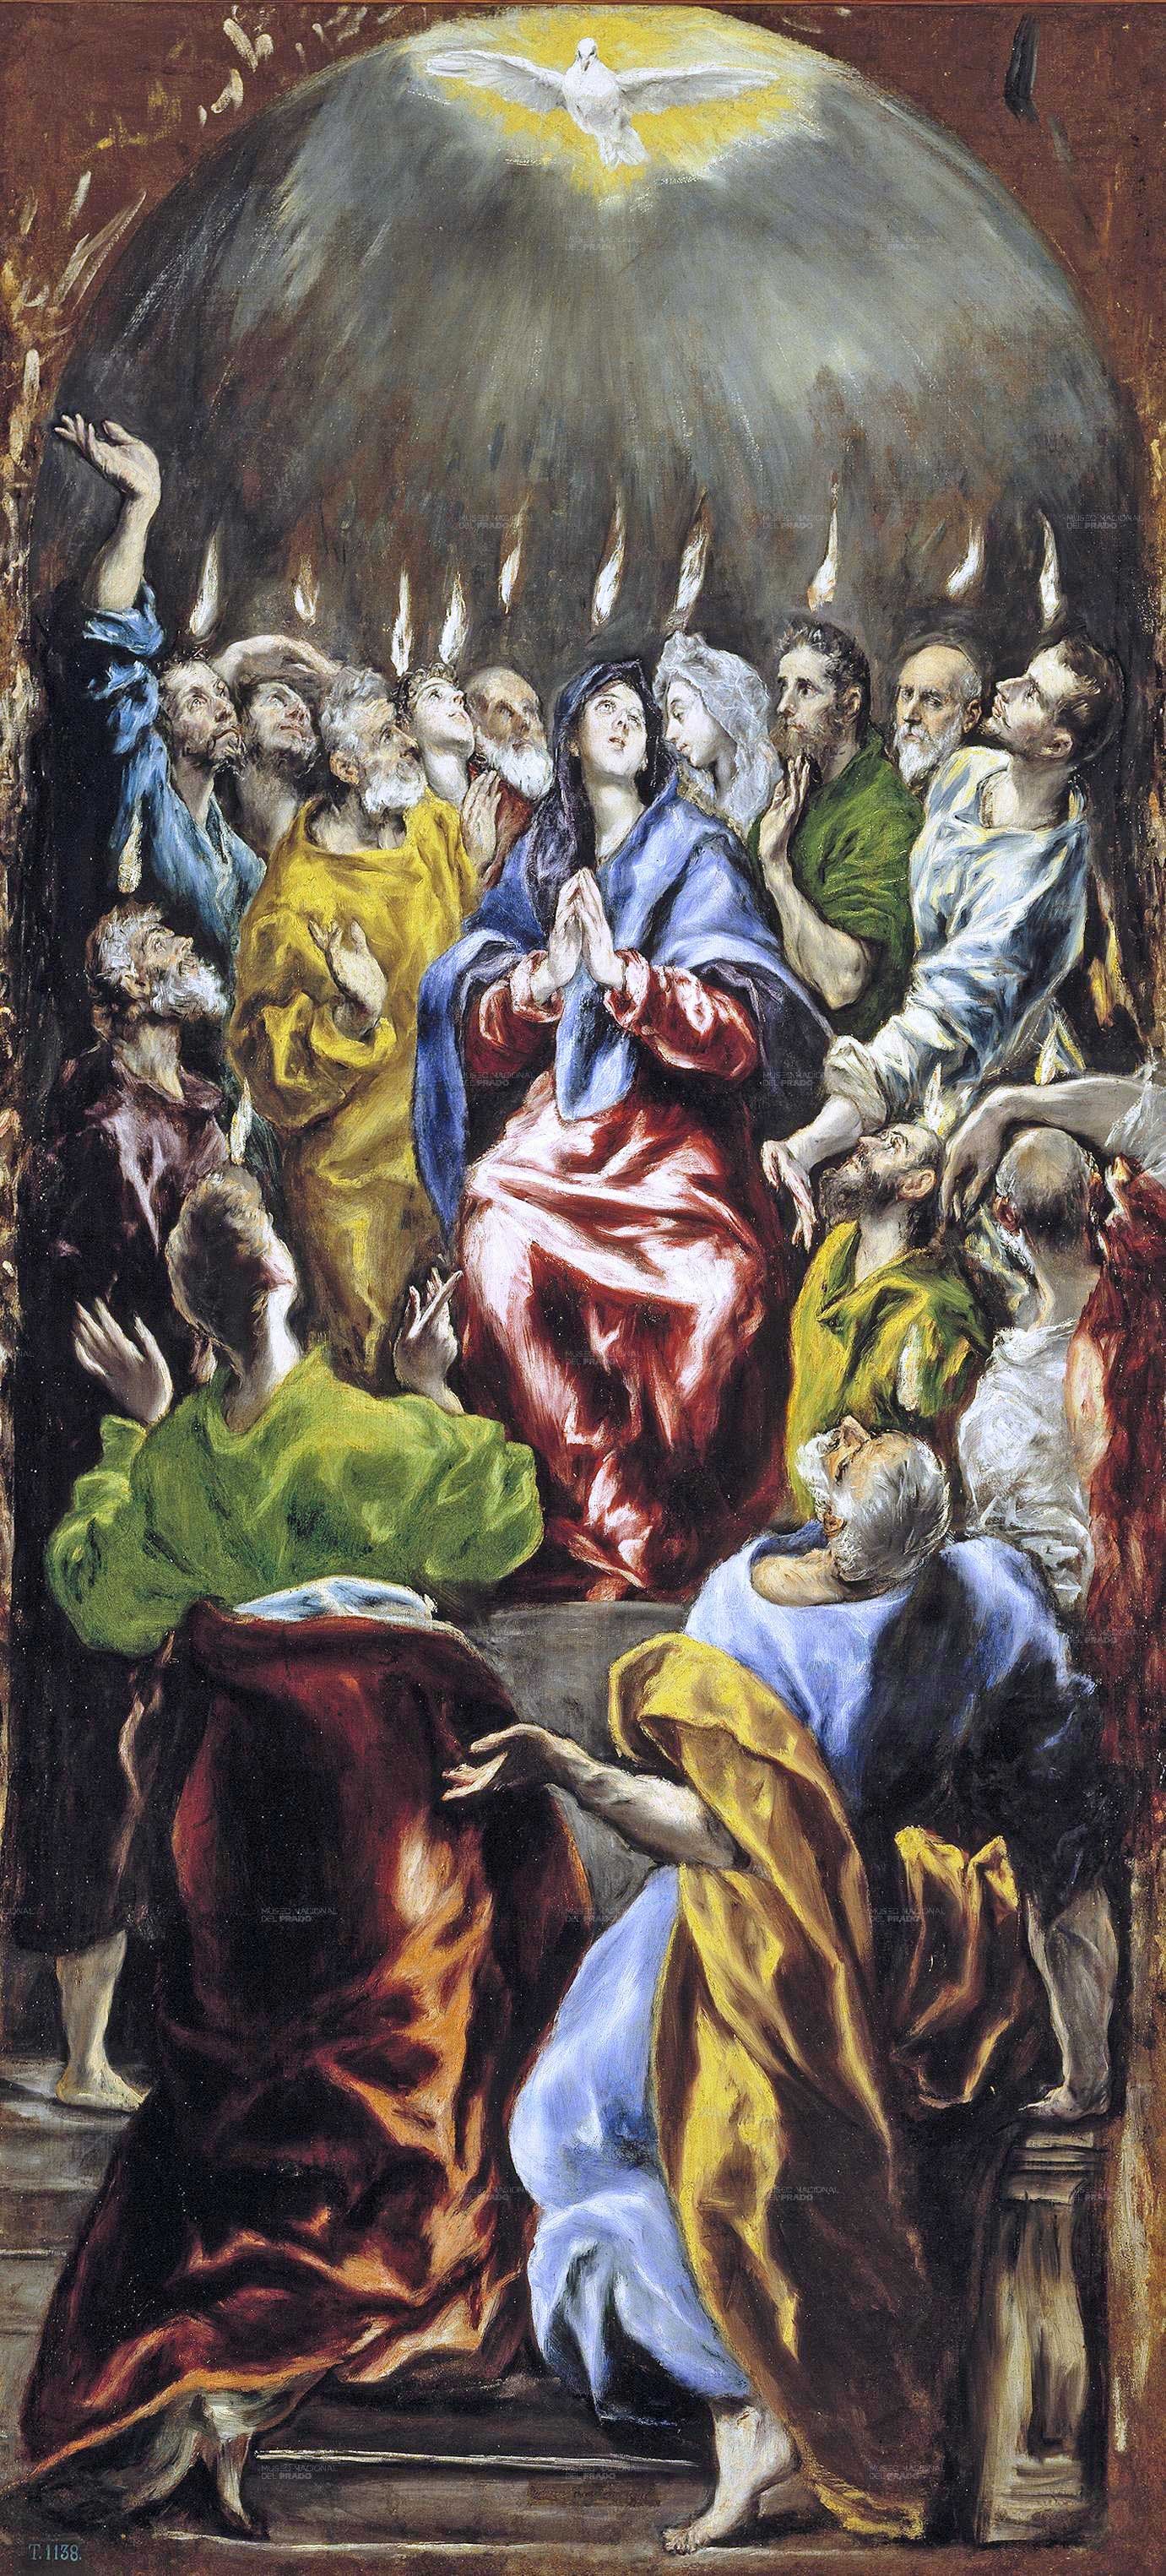 Pentecost by the Greek-Spanish painter El Greco (1541-1614), Museo Nacional del Prado, Madrid.